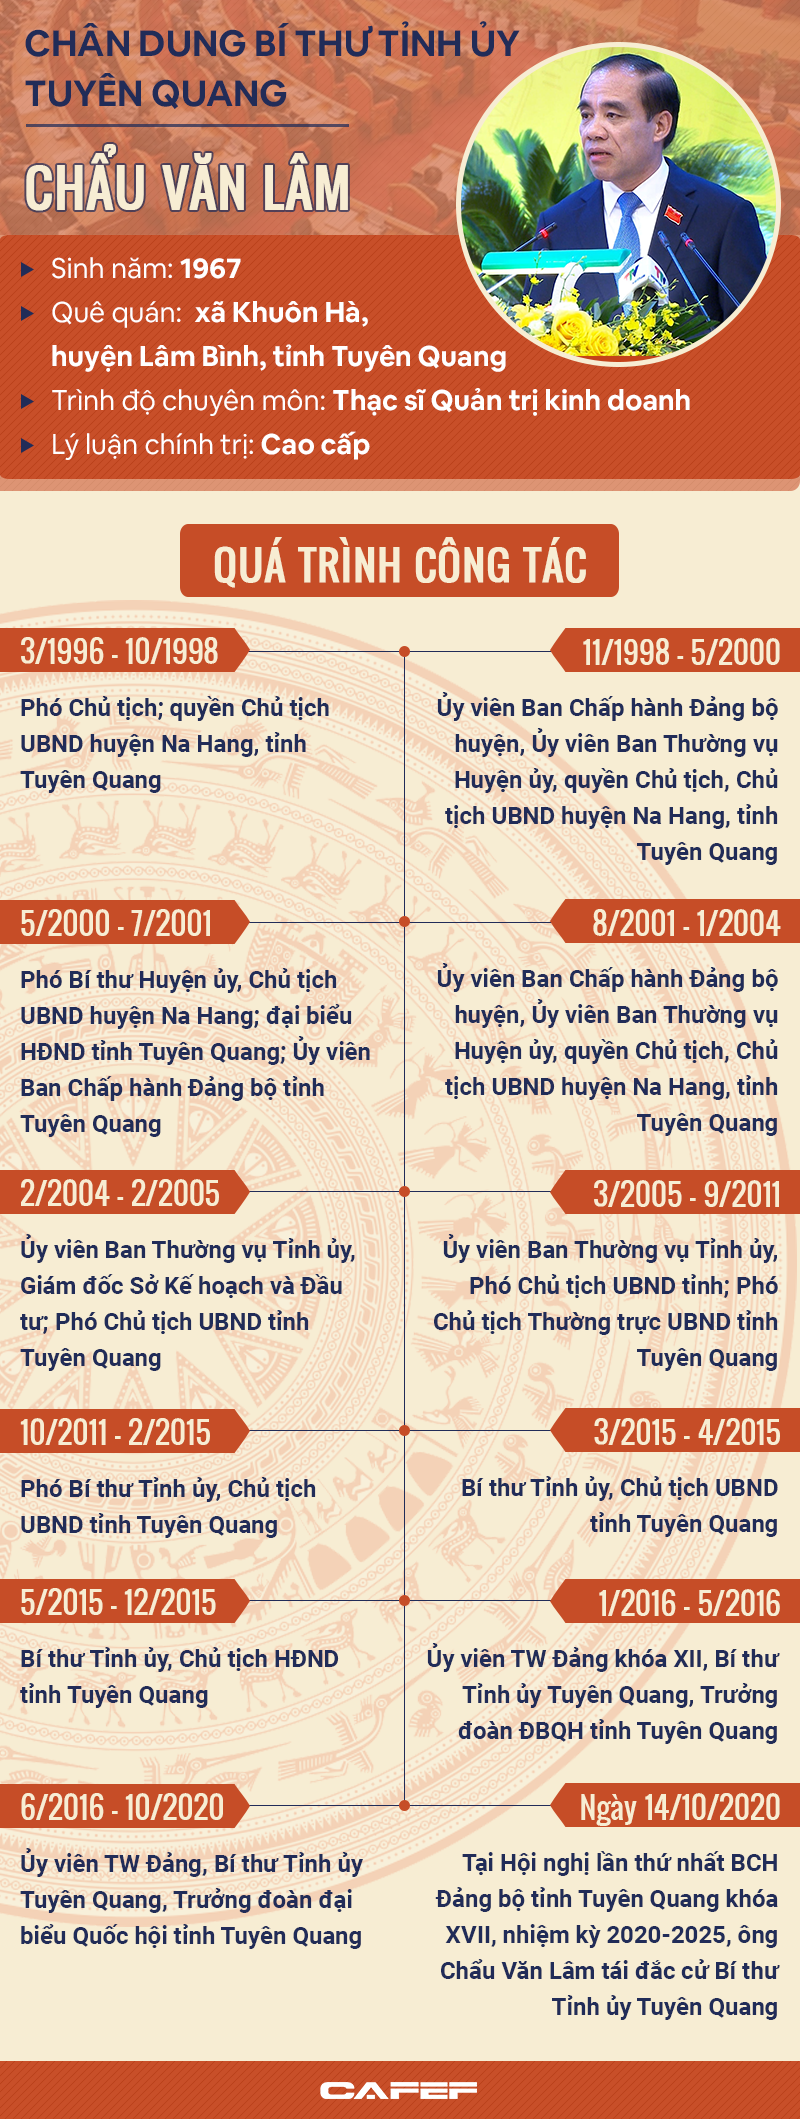 [Infographic]: Chân dung Bí thư Tỉnh ủy Tuyên Quang Chẩu Văn Lâm - Ảnh 1.